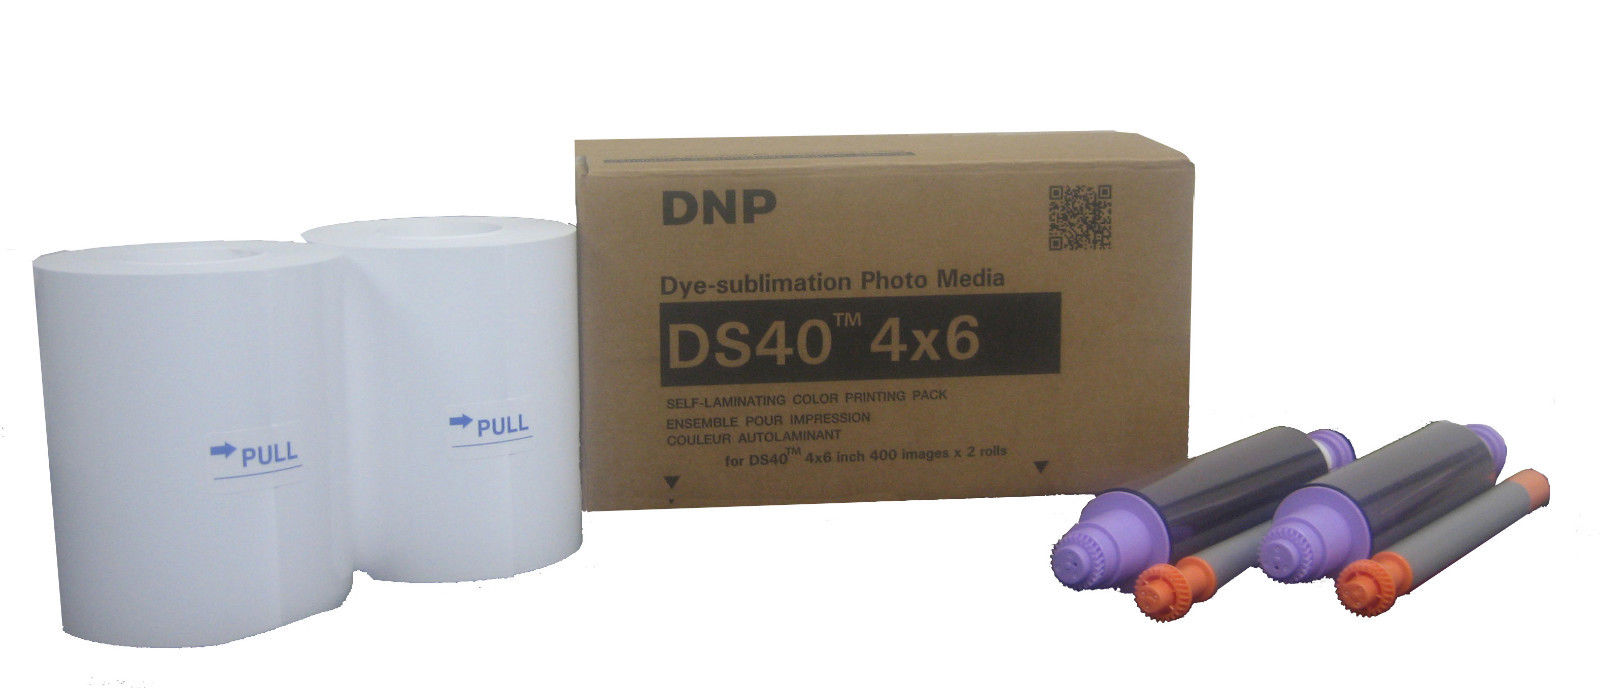 DNP DS-40 4"x6" Print Kit for DS40 Printer